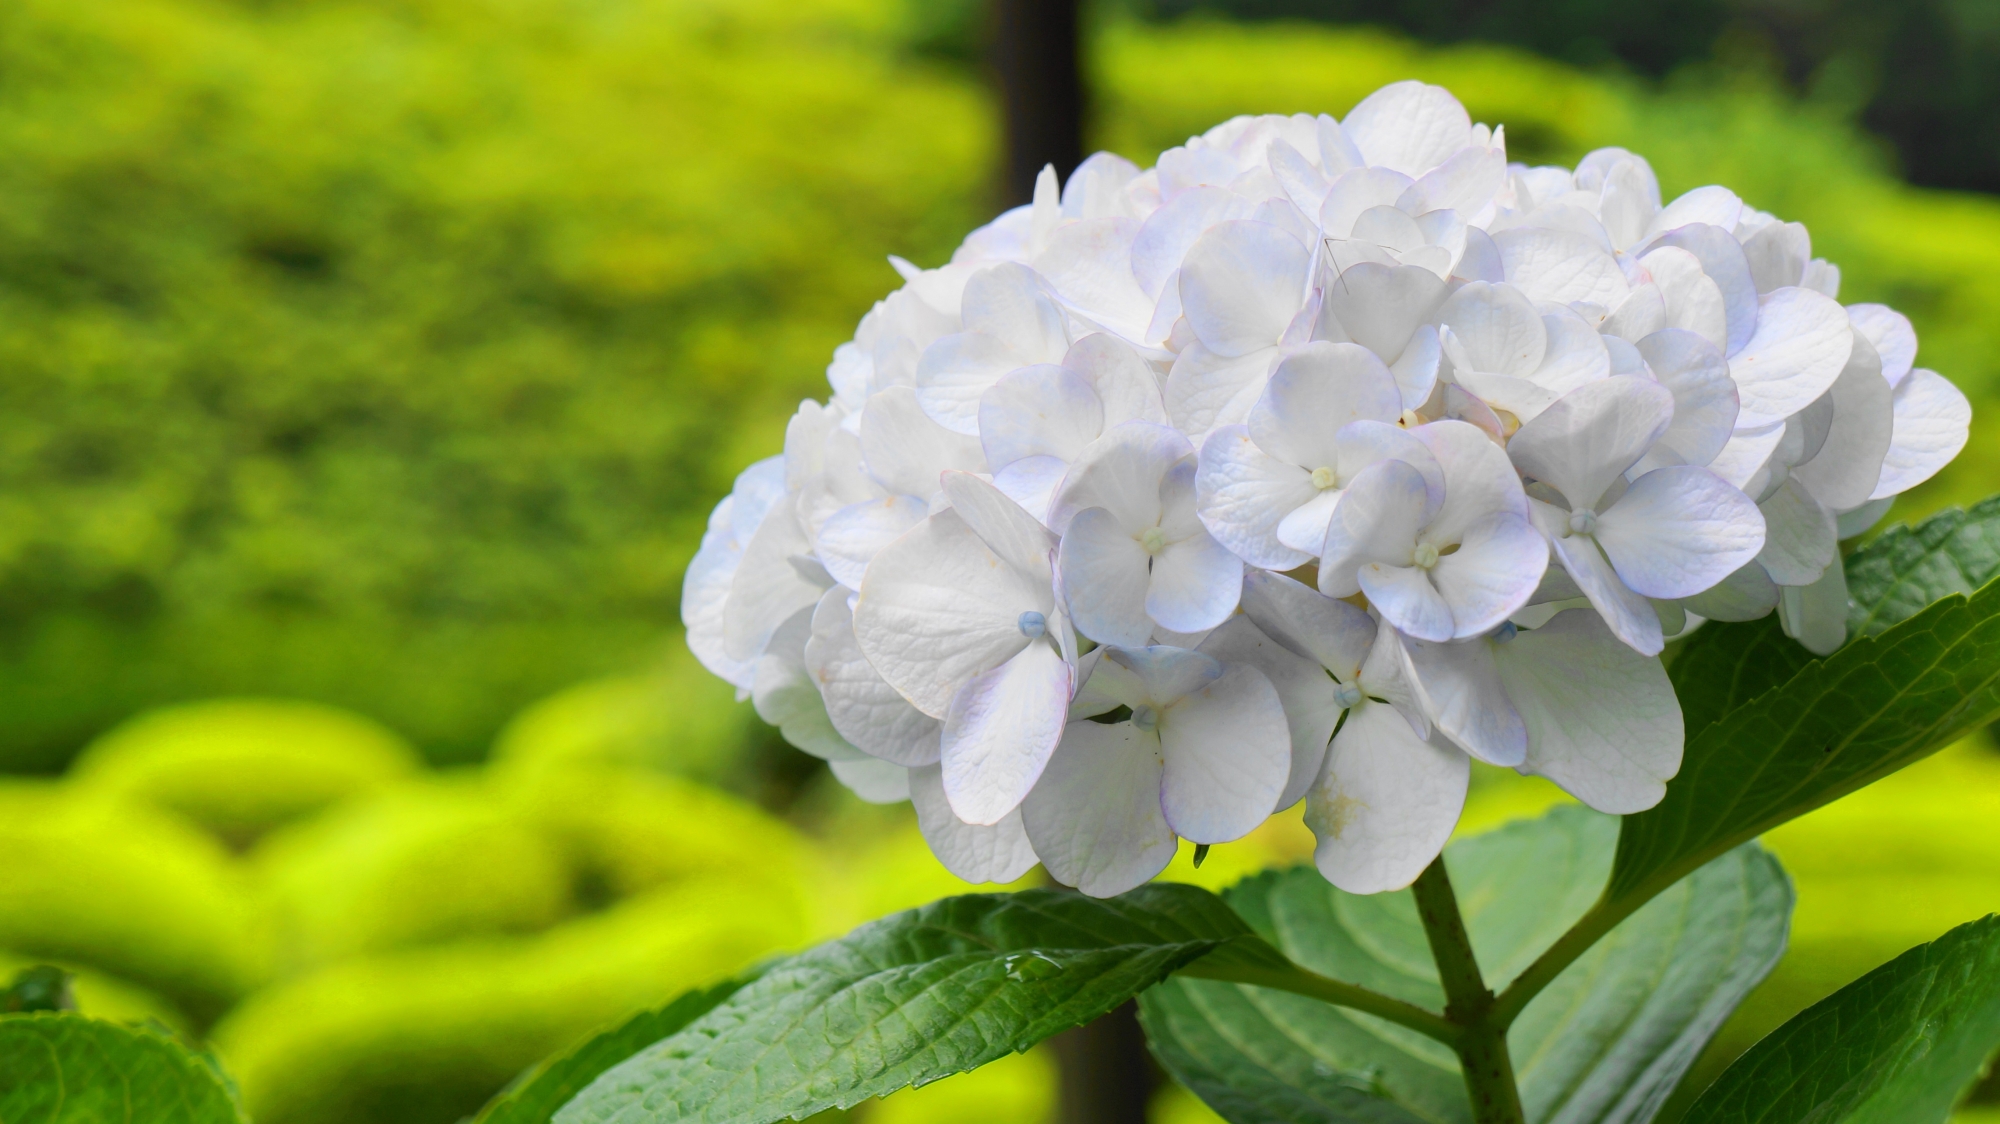 三室戸寺の淡い緑の中で咲くうっすら水色の入った白い紫陽花